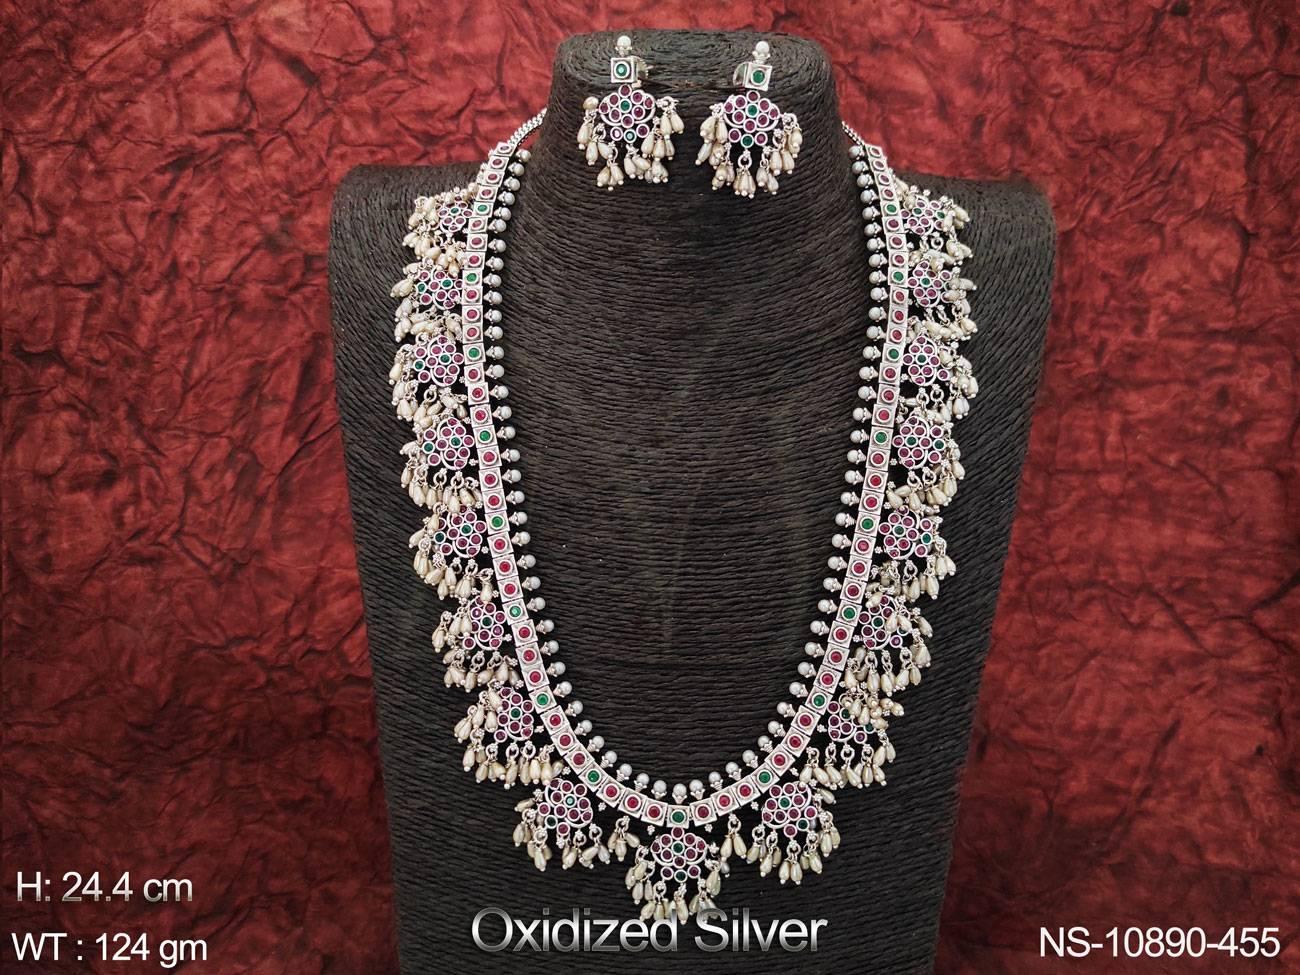 Oxidized Silver Polish Fancy Design Special Navratra Jewelry Beautiful Long Oxidized Necklace Set